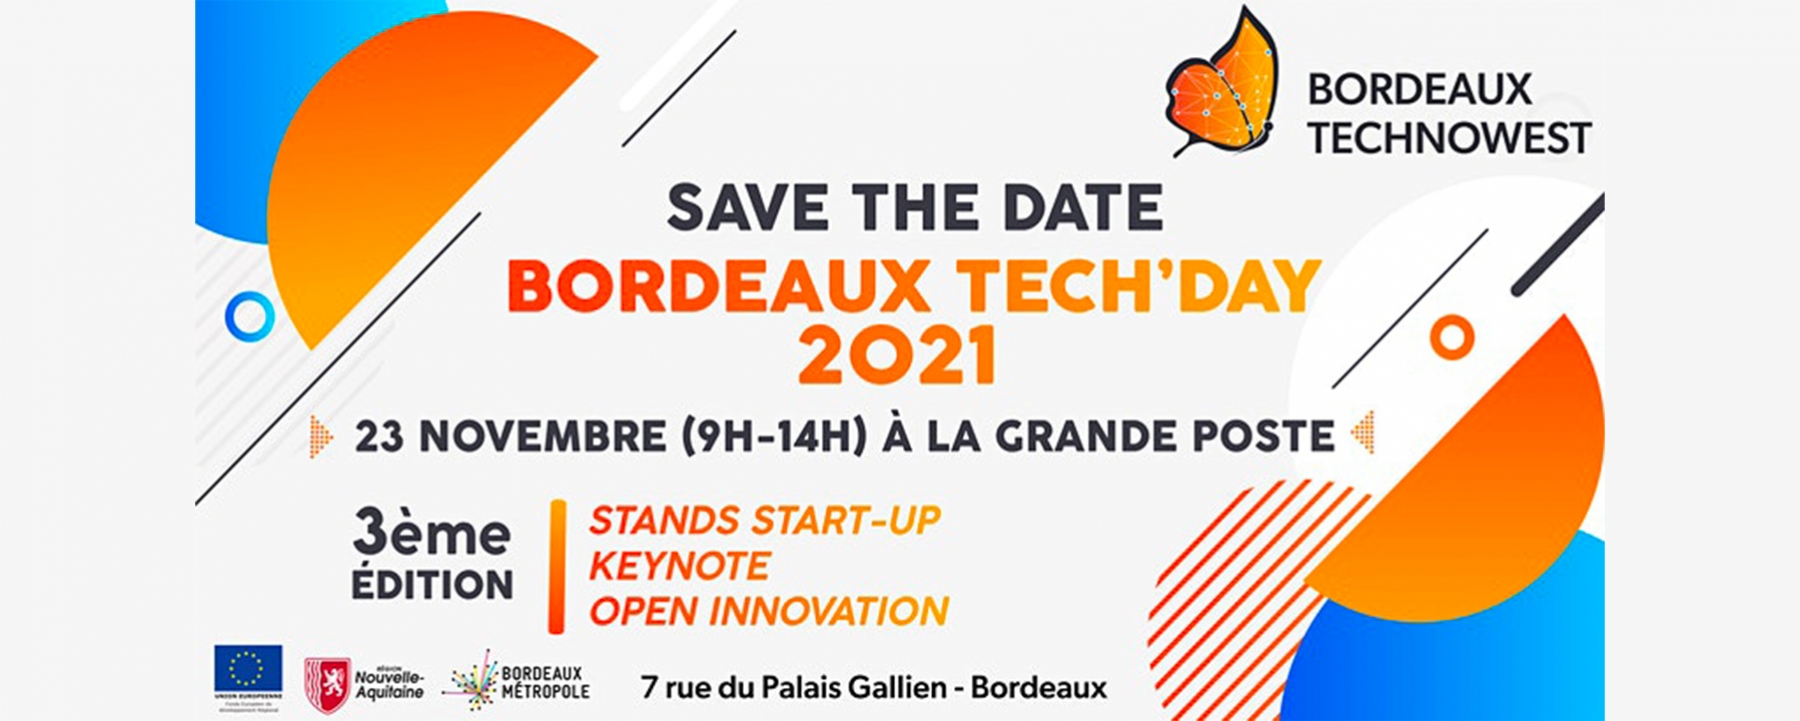 Bordeaux Tech'day le 23 novembre 2021